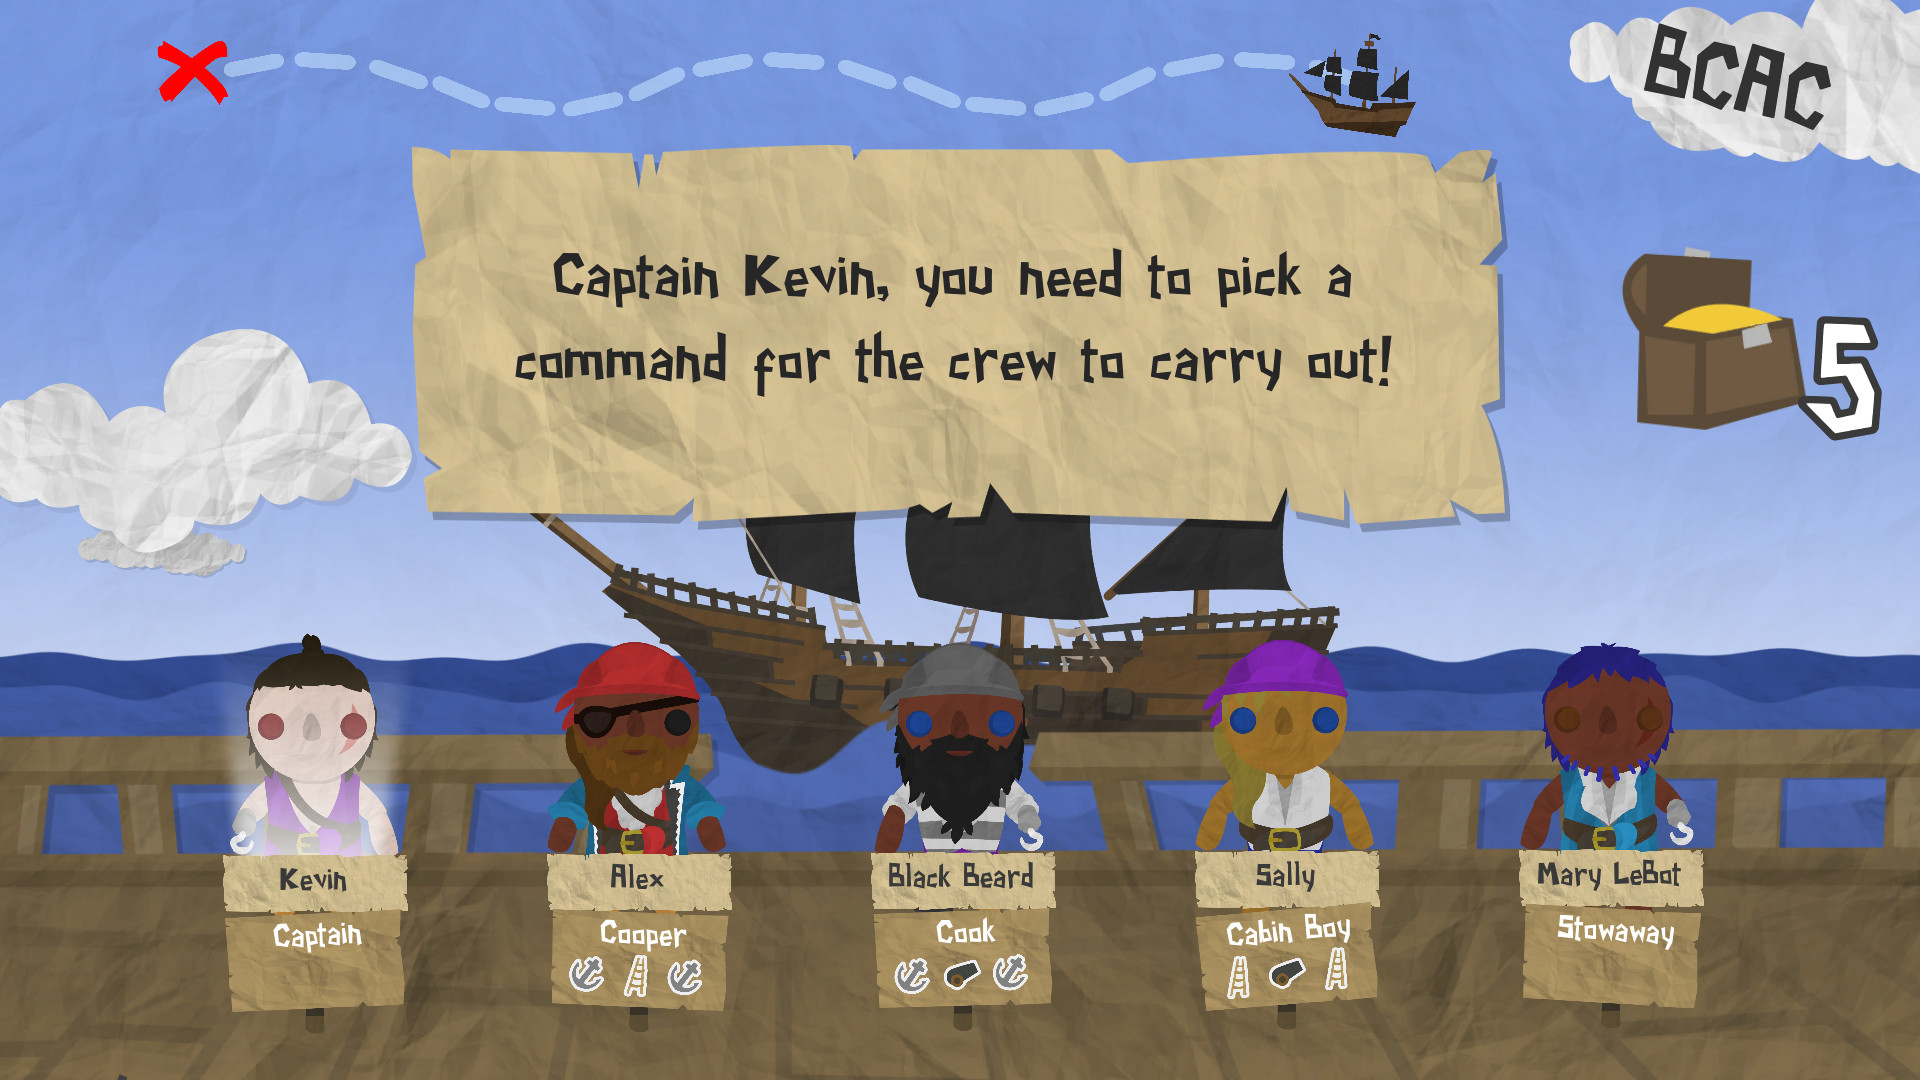 Paper Pirates Free Download